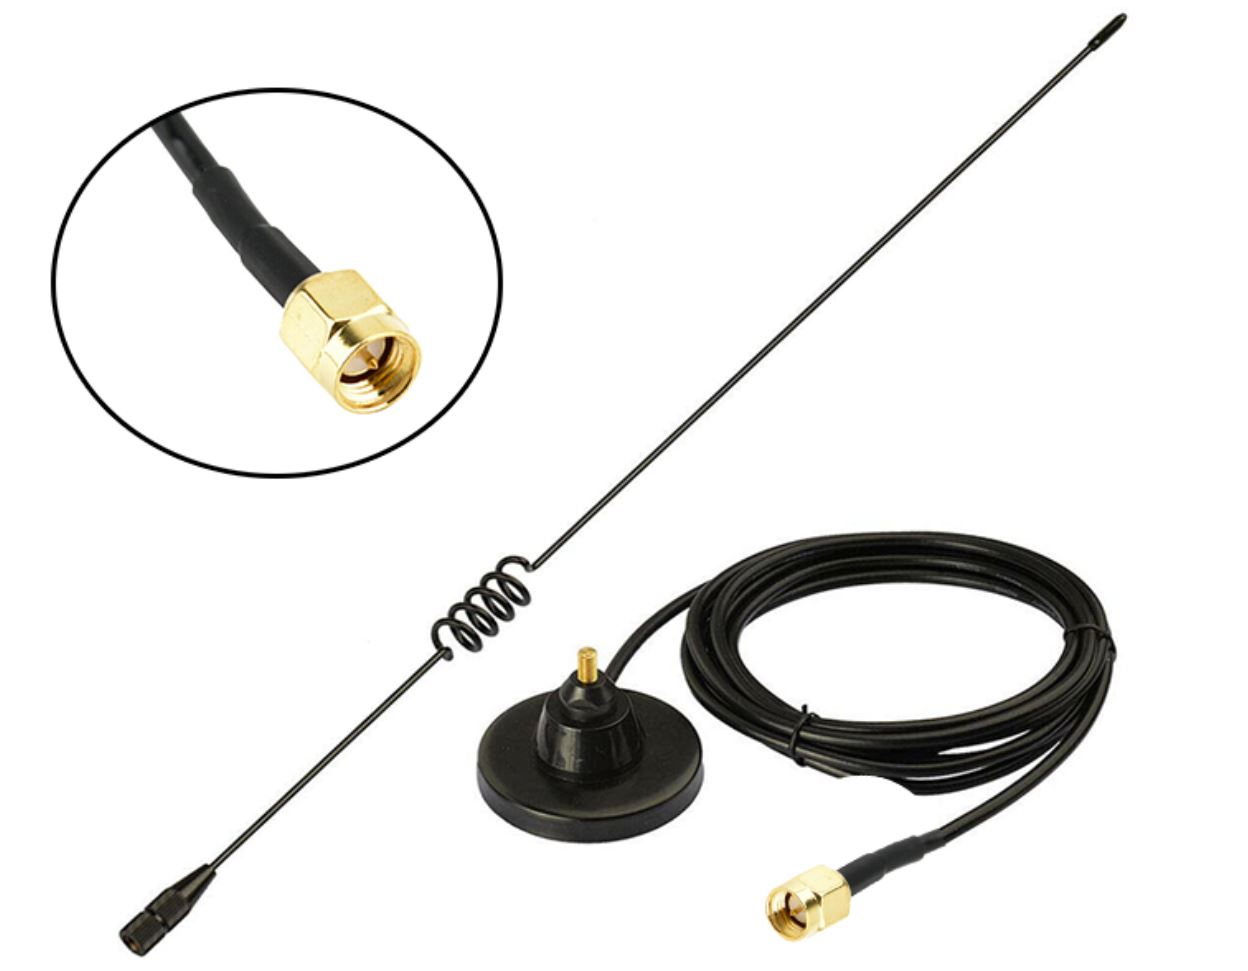 OEM Anténa magnetická VU-1510 (SD90VU) dualband Konektor: SMA, Umístění: Magnetická